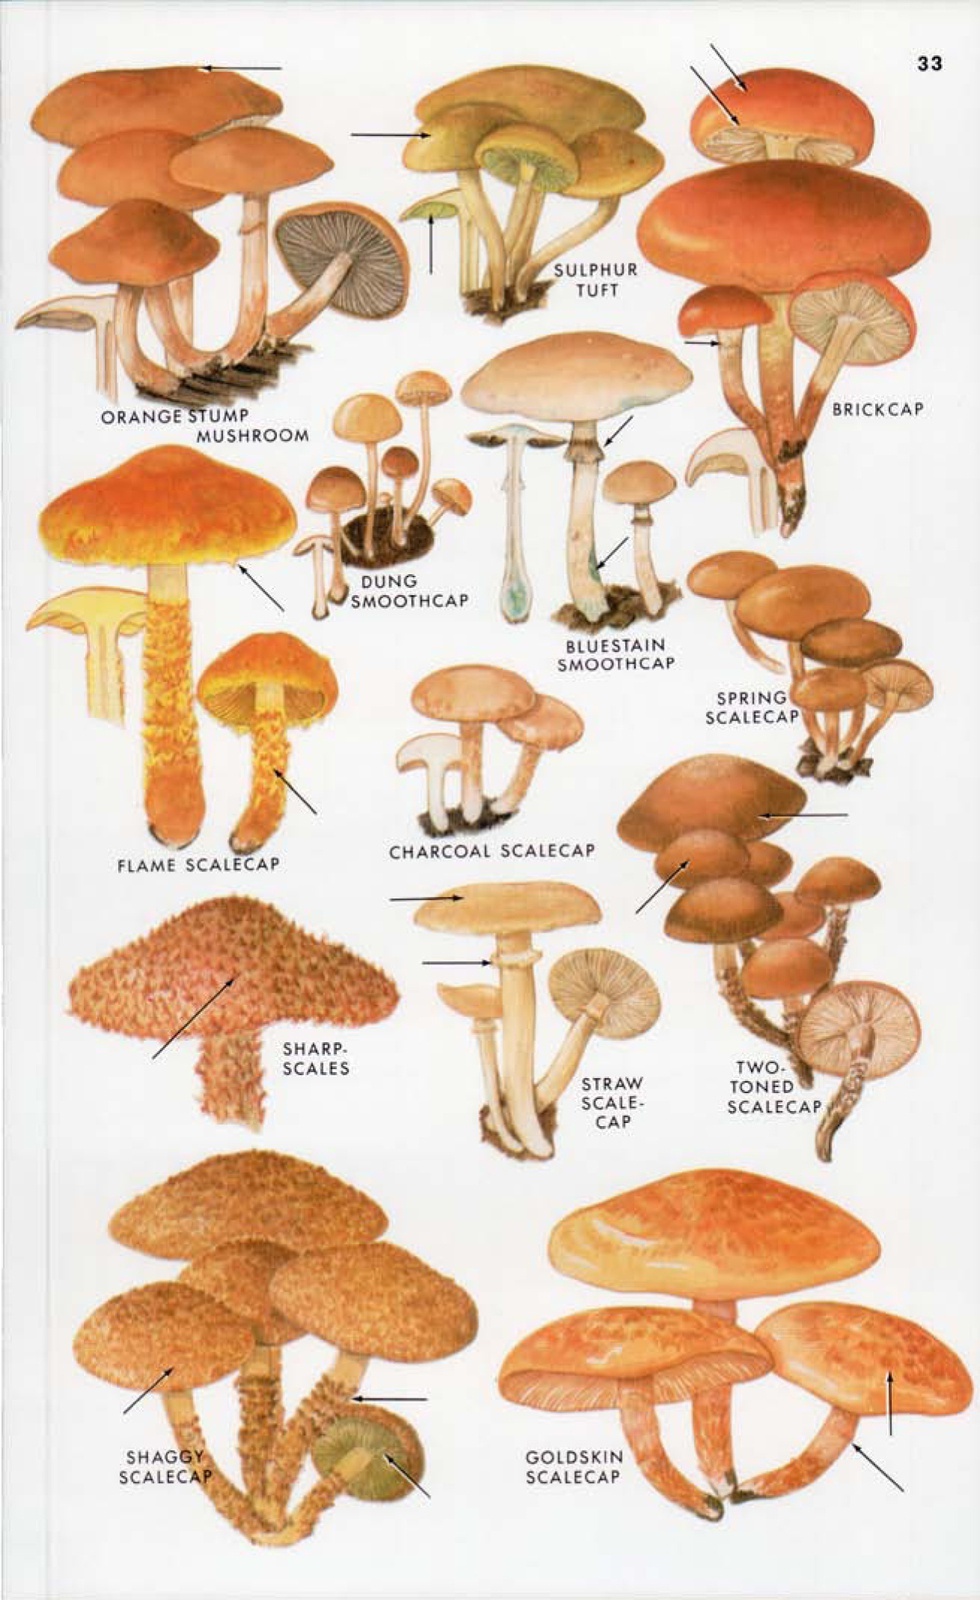 常见蘑菇的种类及图片图片